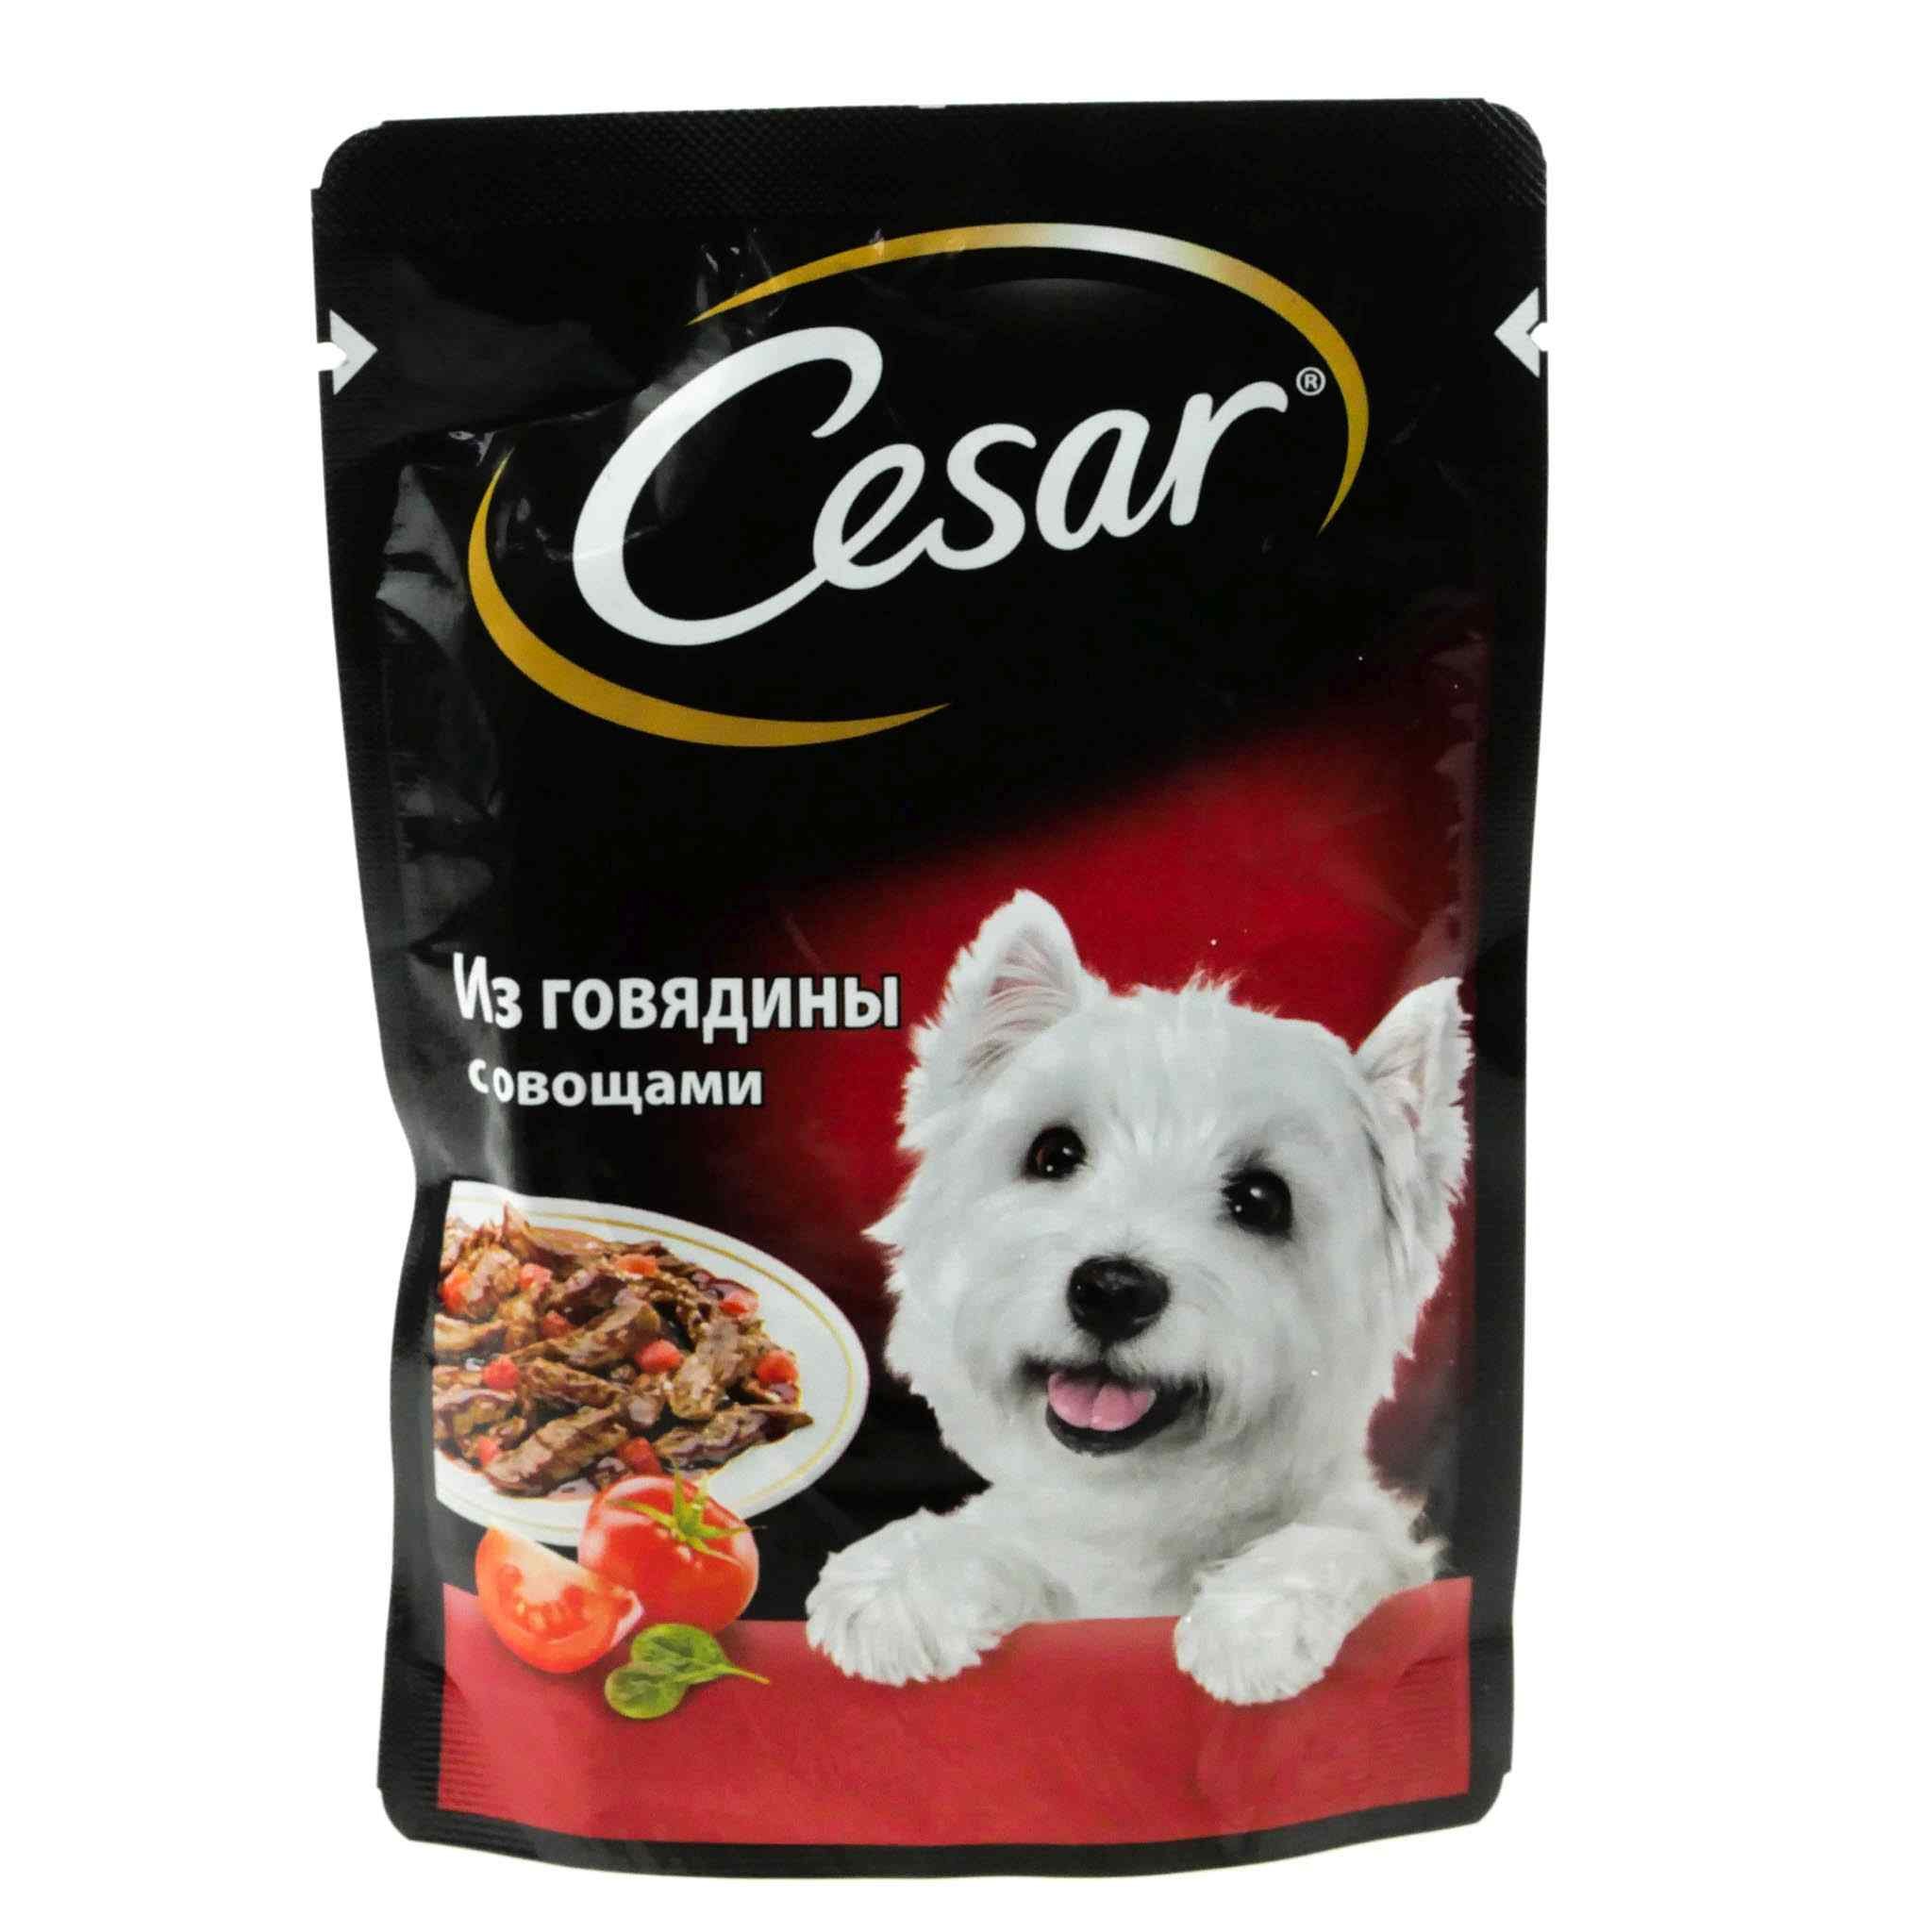 Корма для собак беларусь. Корм говядина с овощами Cesar 85г. Cesar корм для собак говядина с овощами 85г. Cesar корм для собак 85 г говядина.